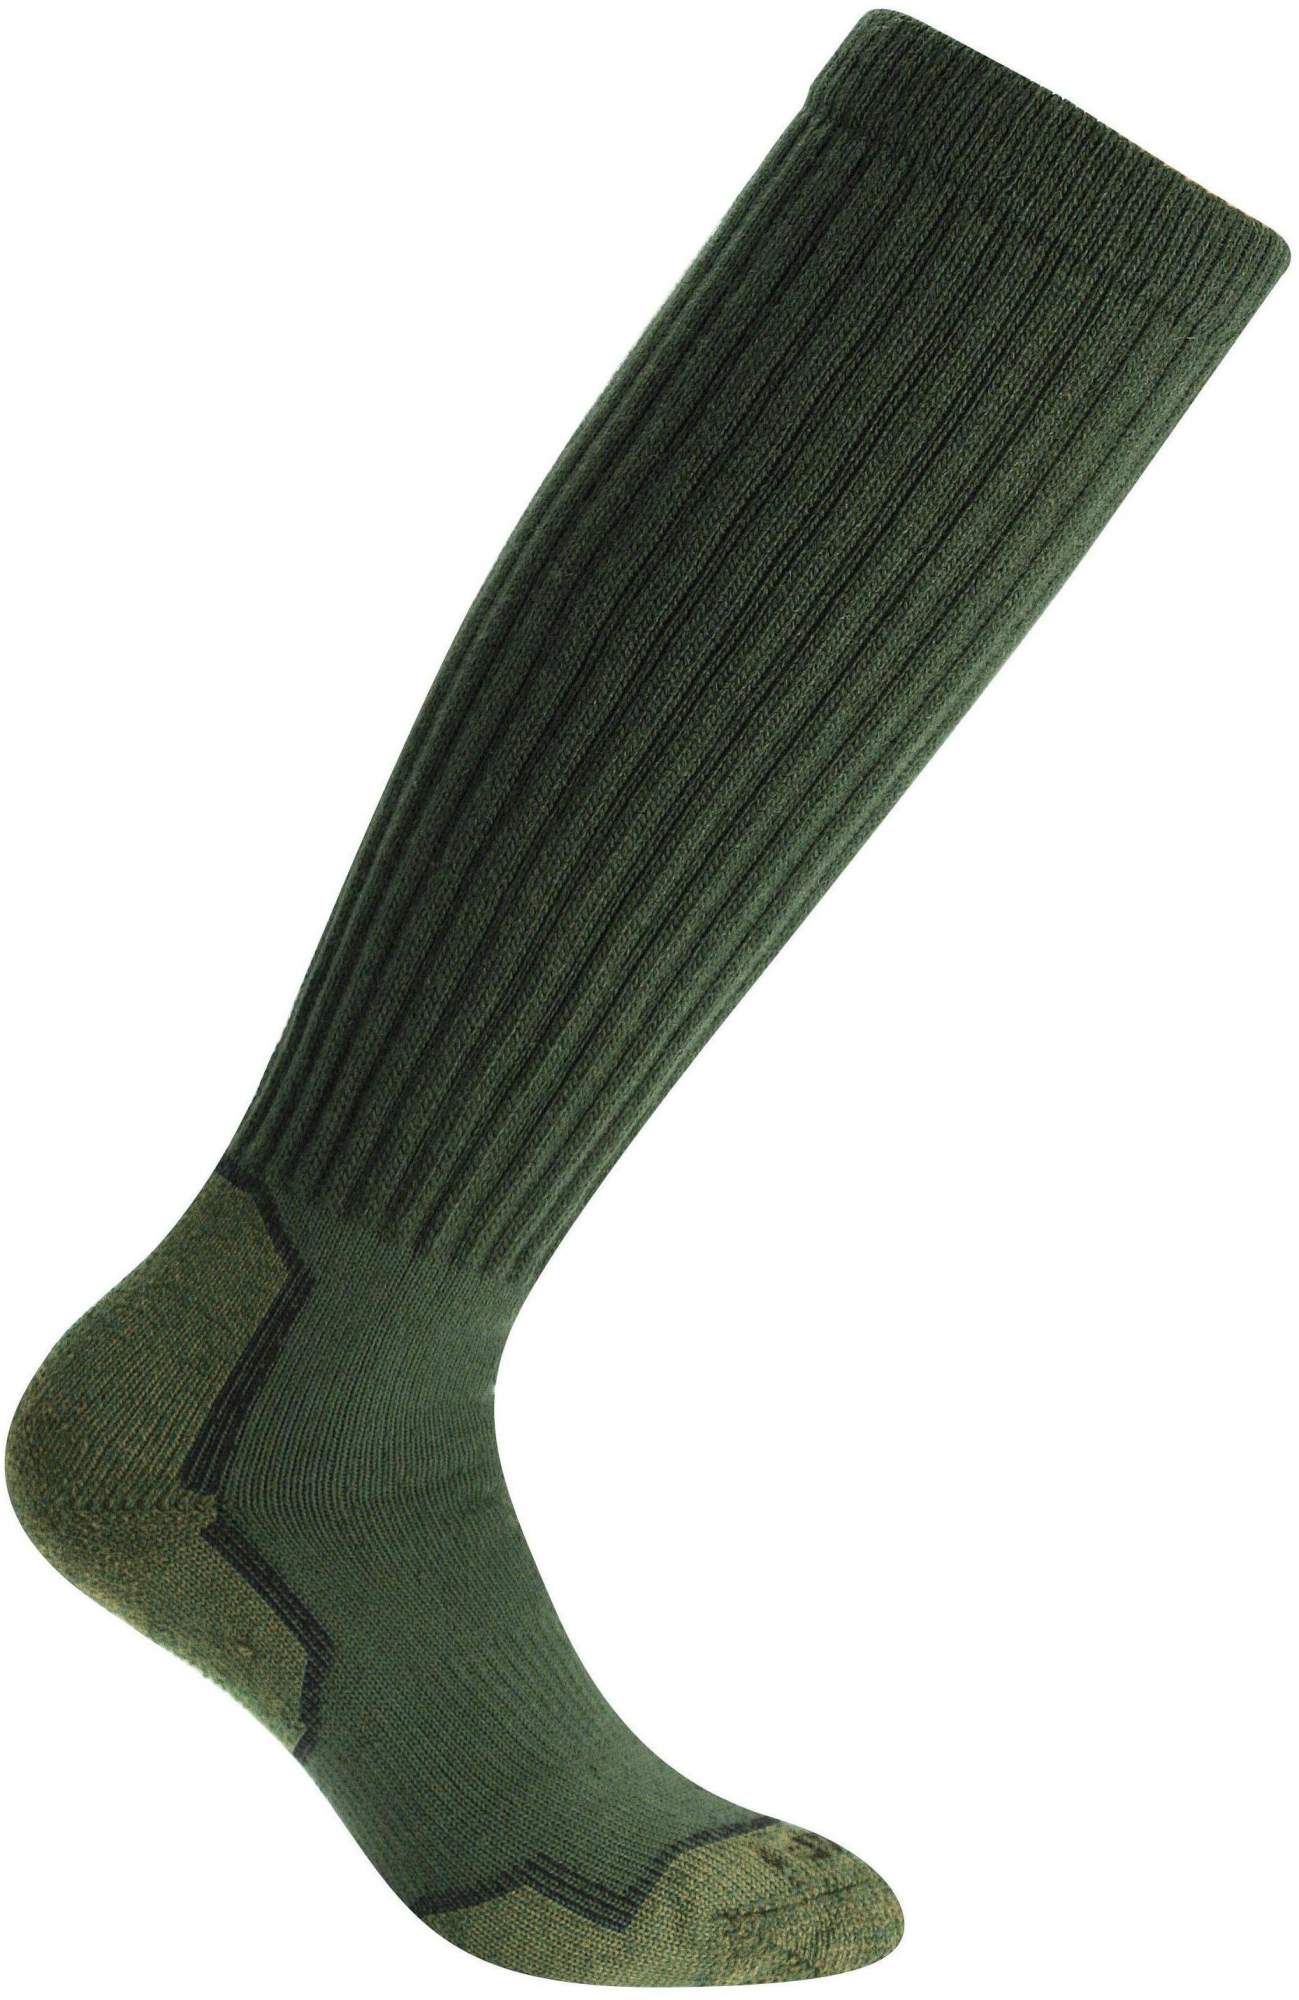 Гольфы женские Accapi Socks Trekking Hard зеленые 45-47 EU